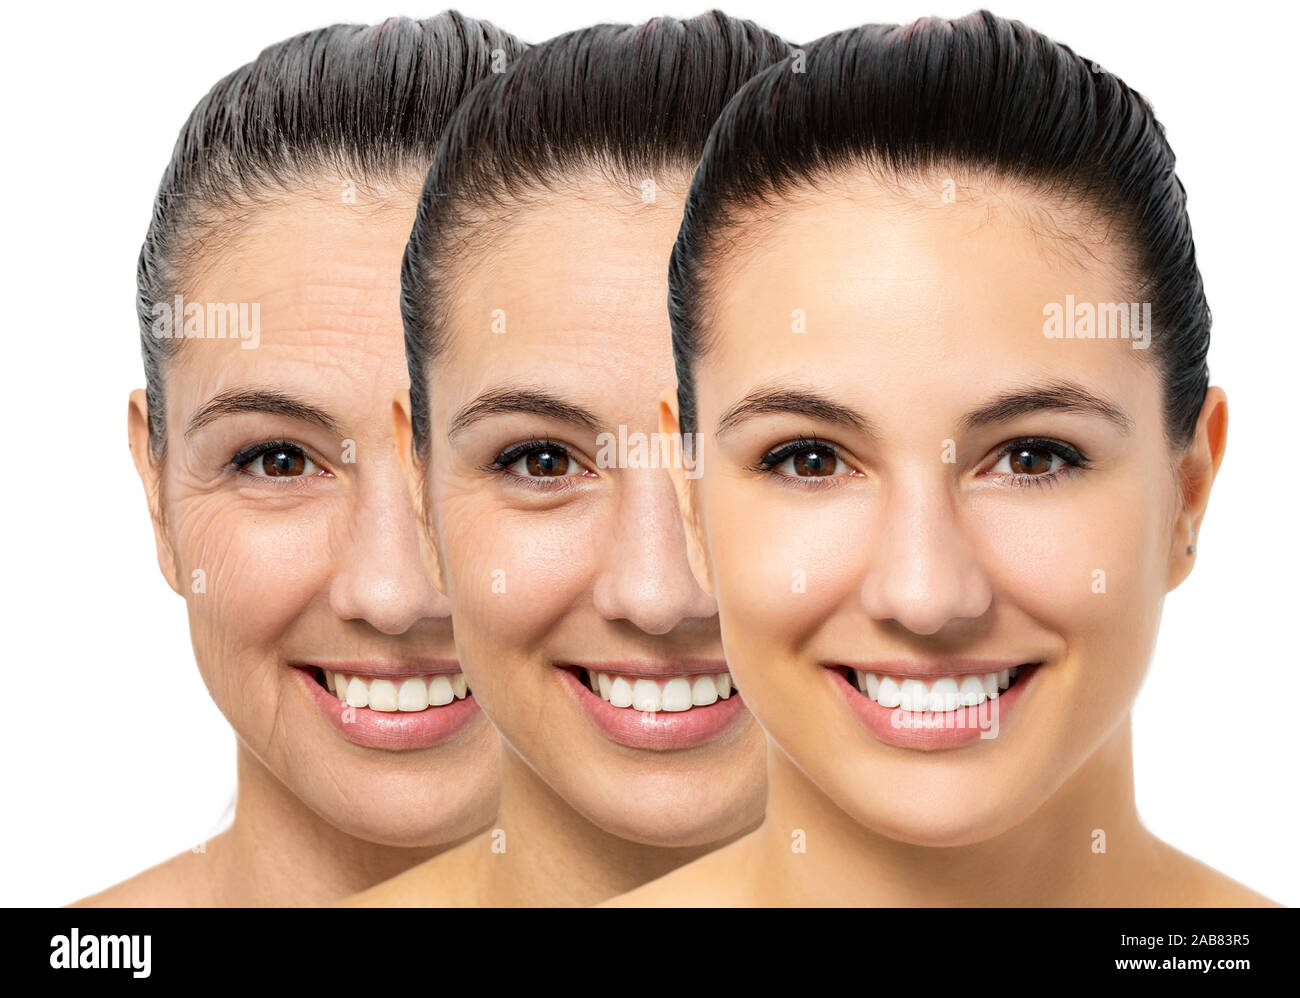 Close up ritratto concettuale della giovane donna che mostra il processo di invecchiamento della pelle. Tre ritratti della stessa ragazza con differenti età e le rughe. Foto Stock